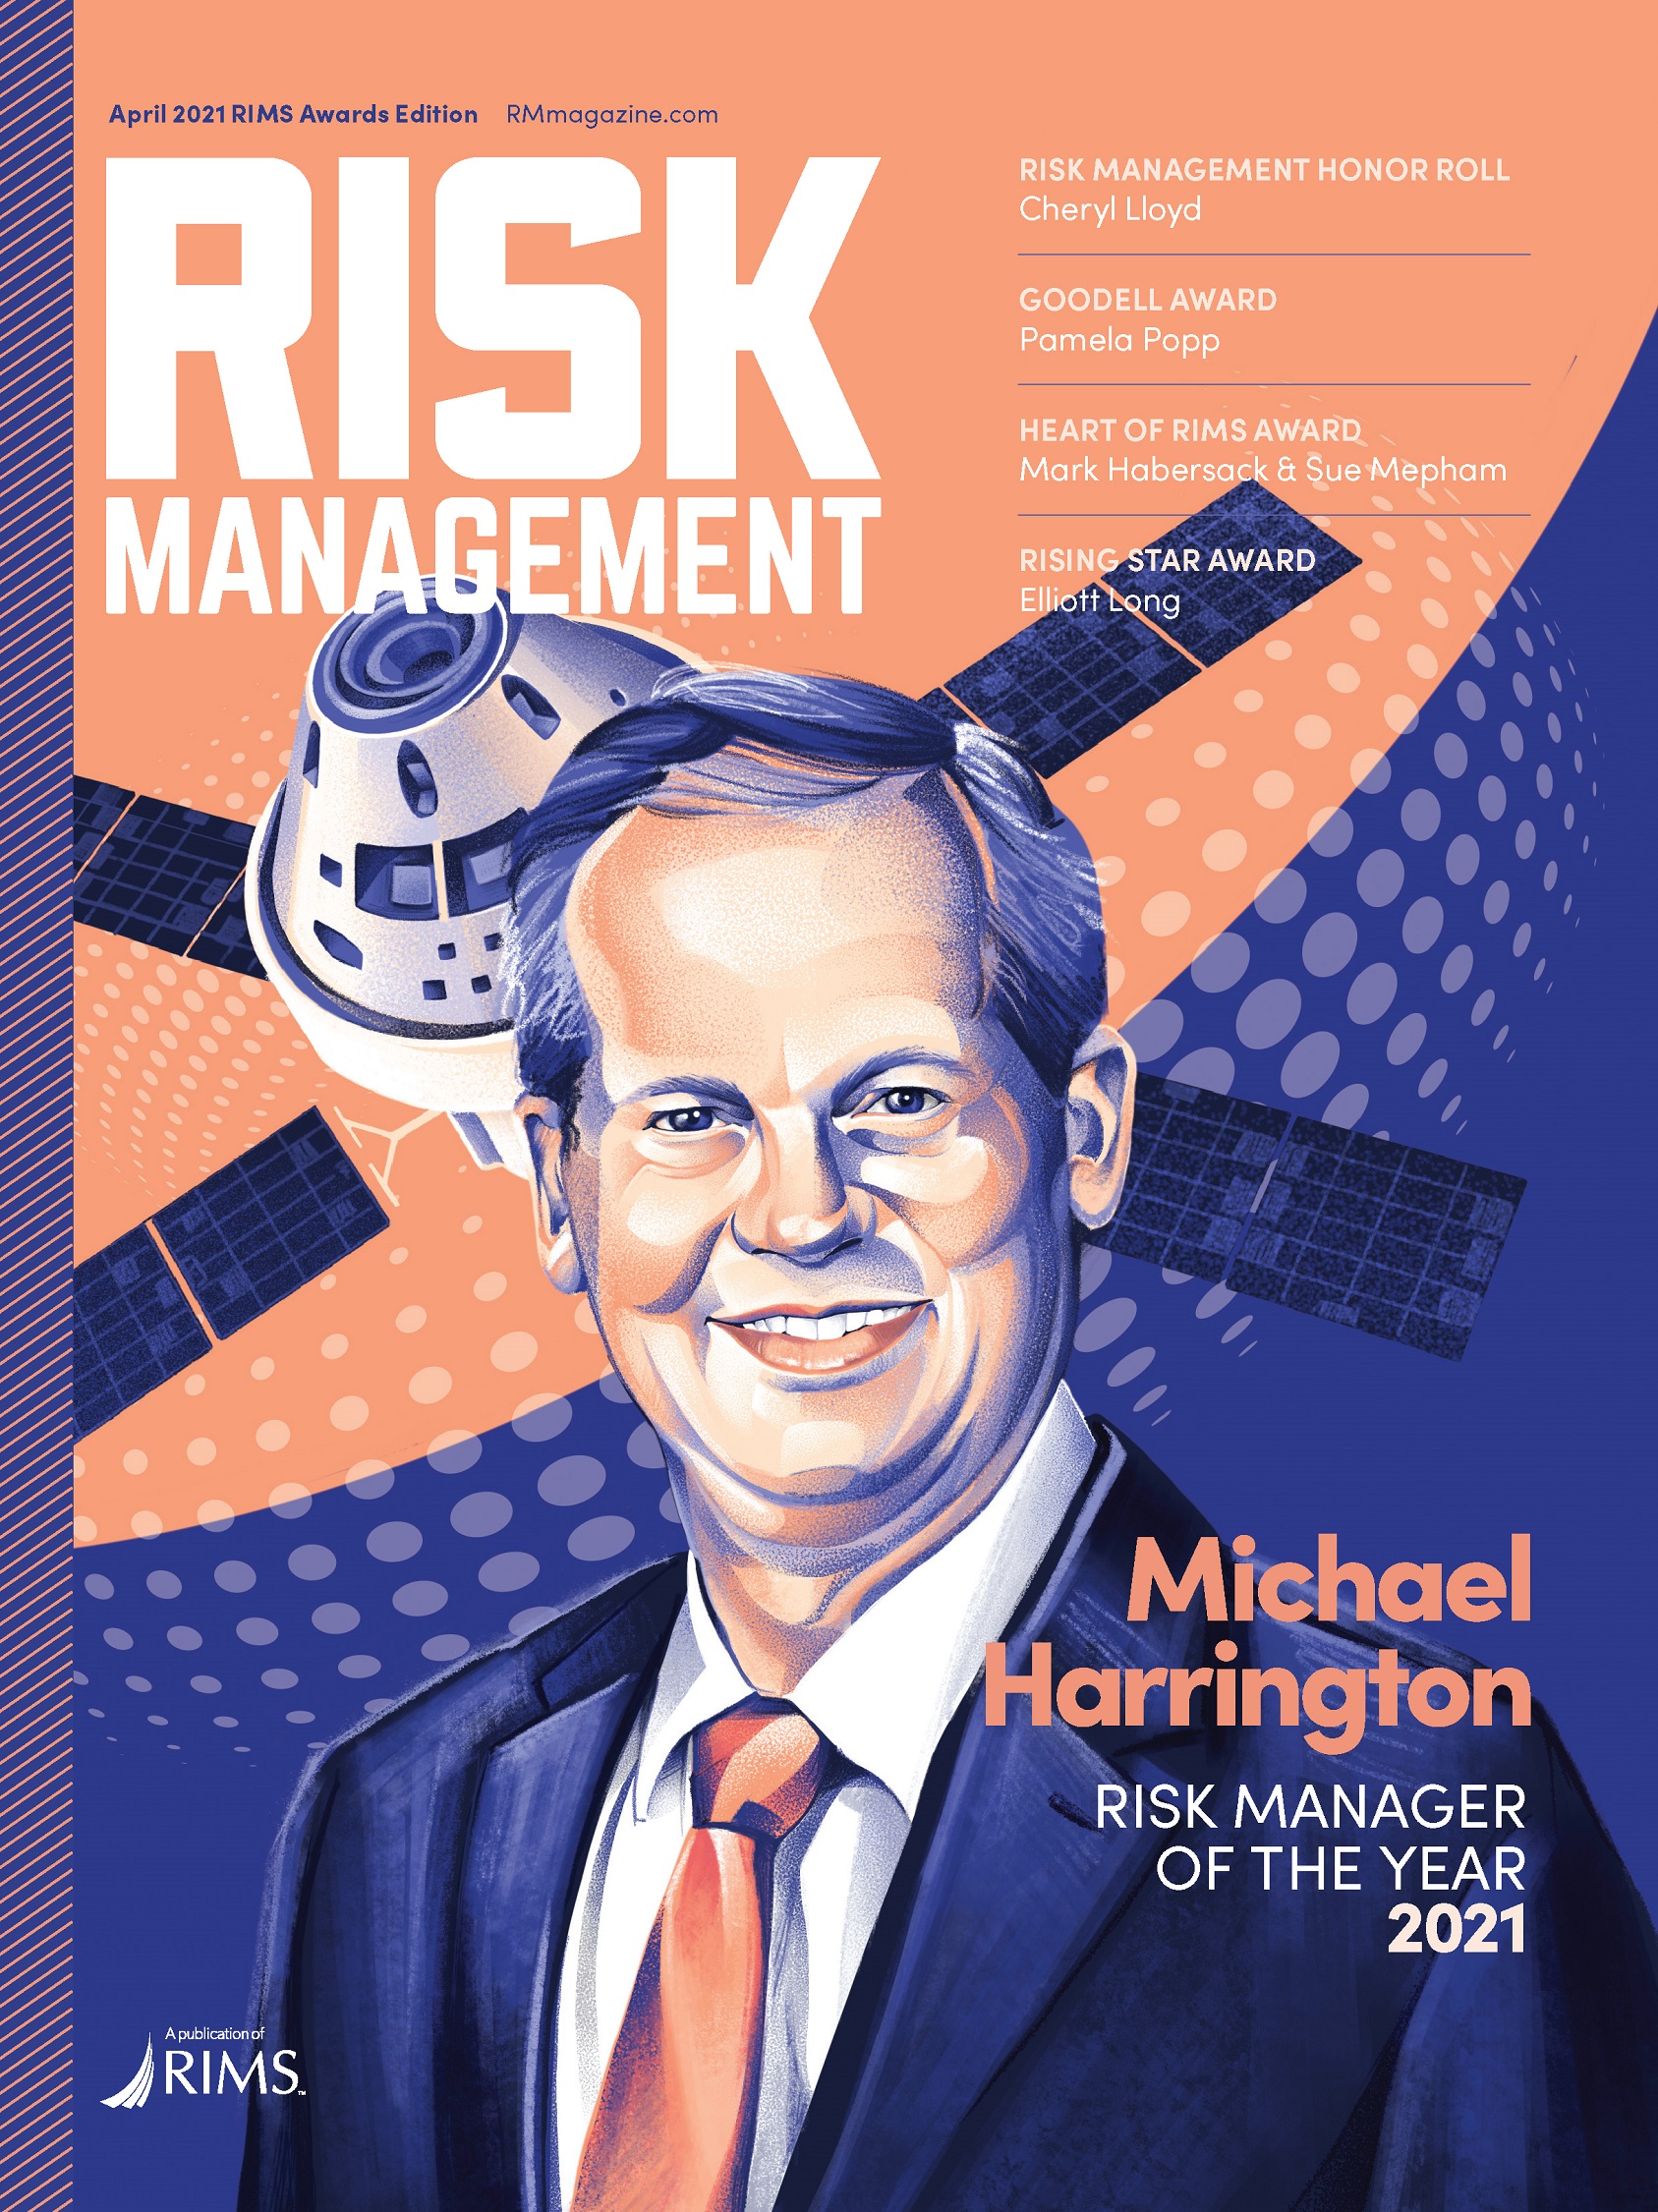 Chiara Vercesi Risk Management portrait illustration of Michael Harrington